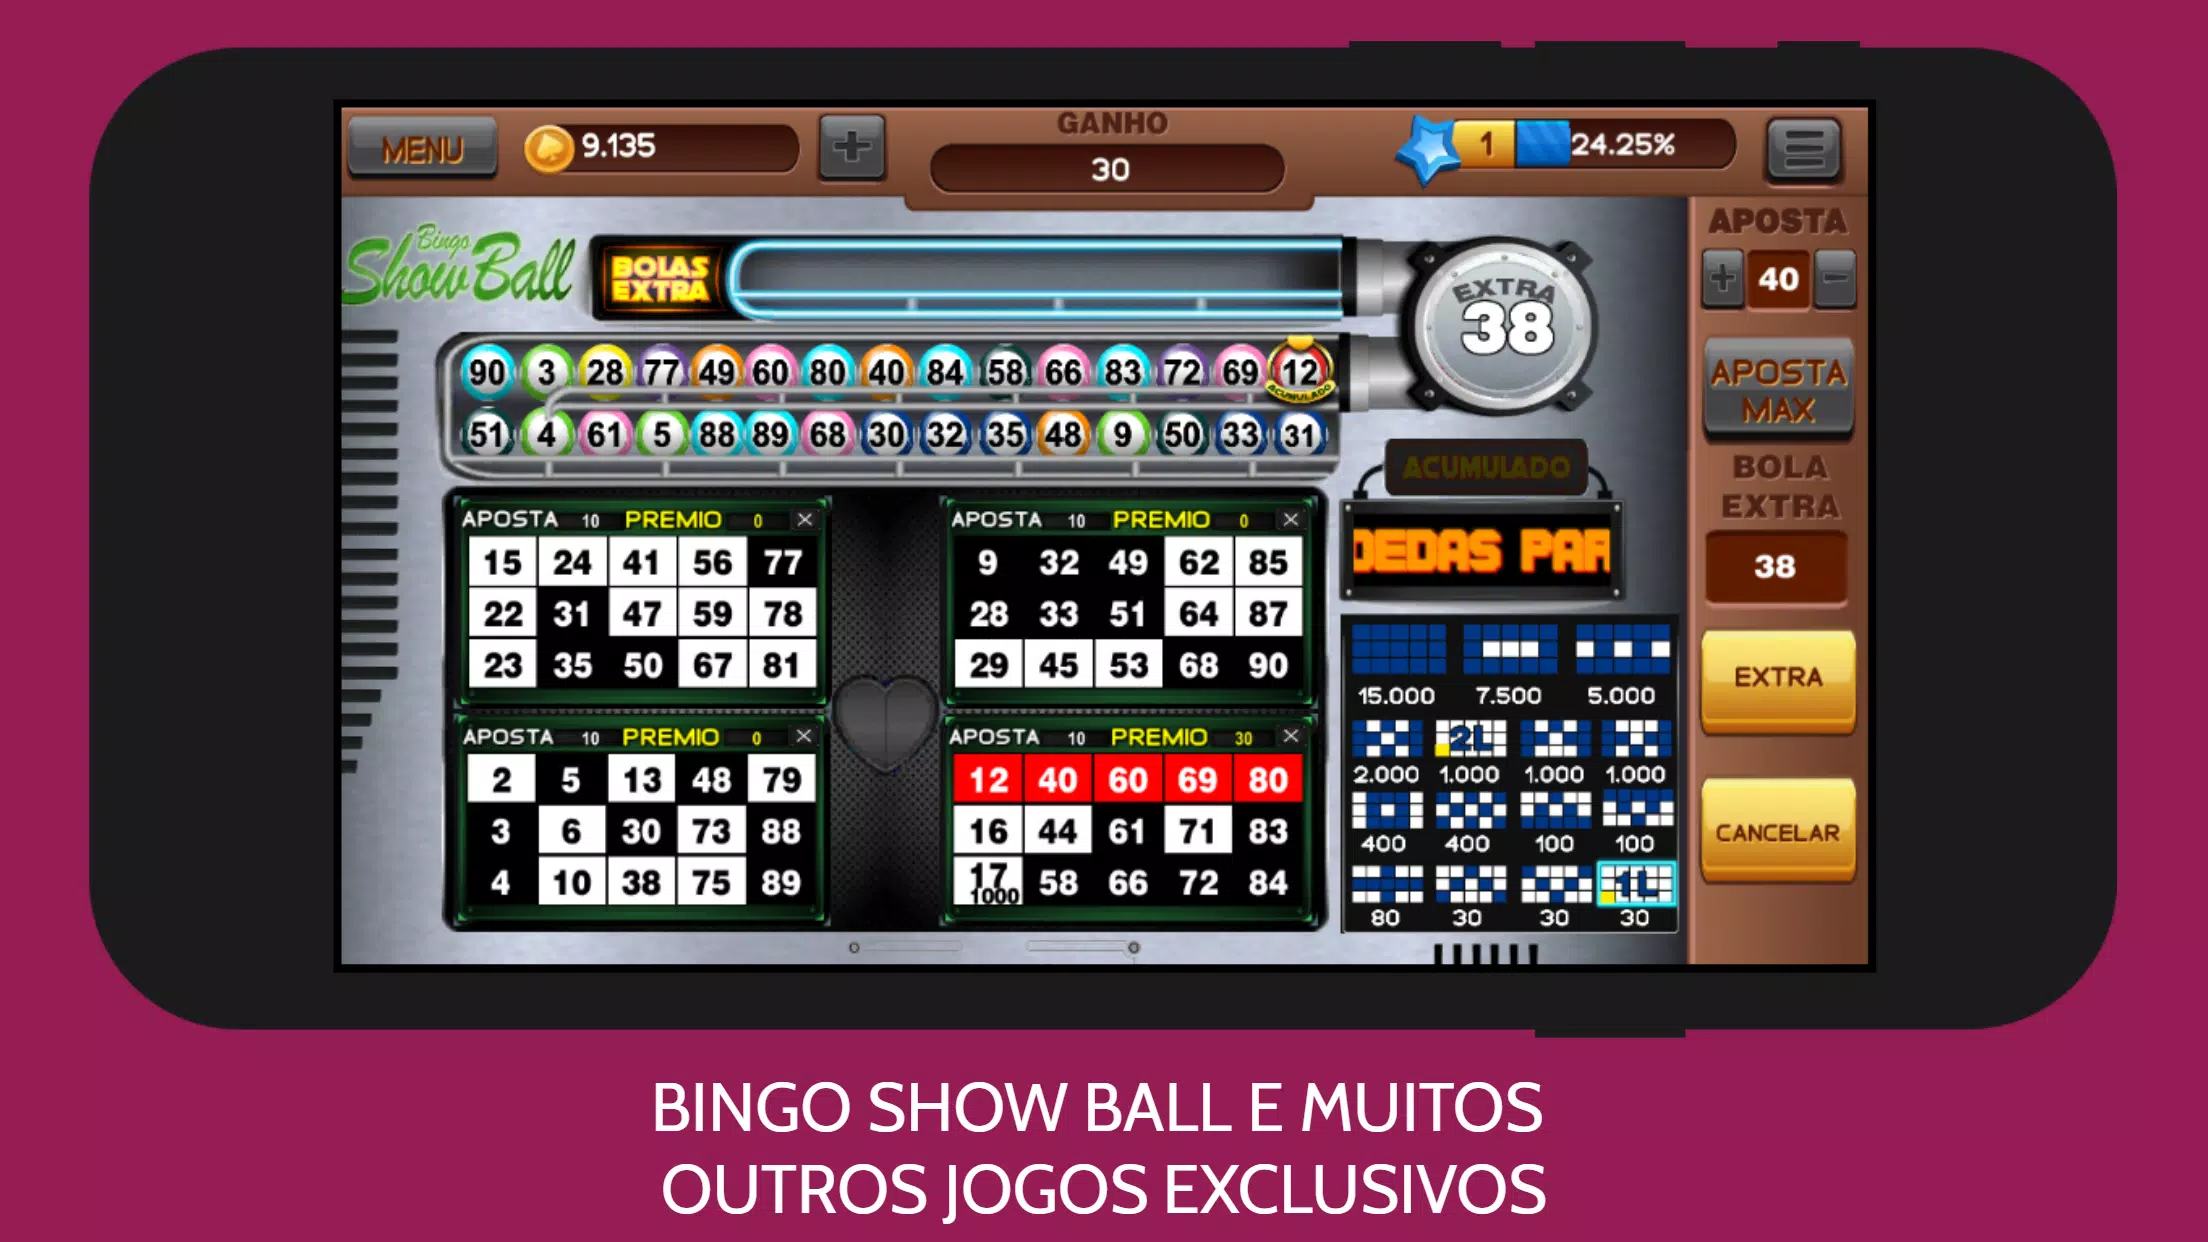 SHOW BALL 3  Jogo de bingo ShowBall 3 online gratis